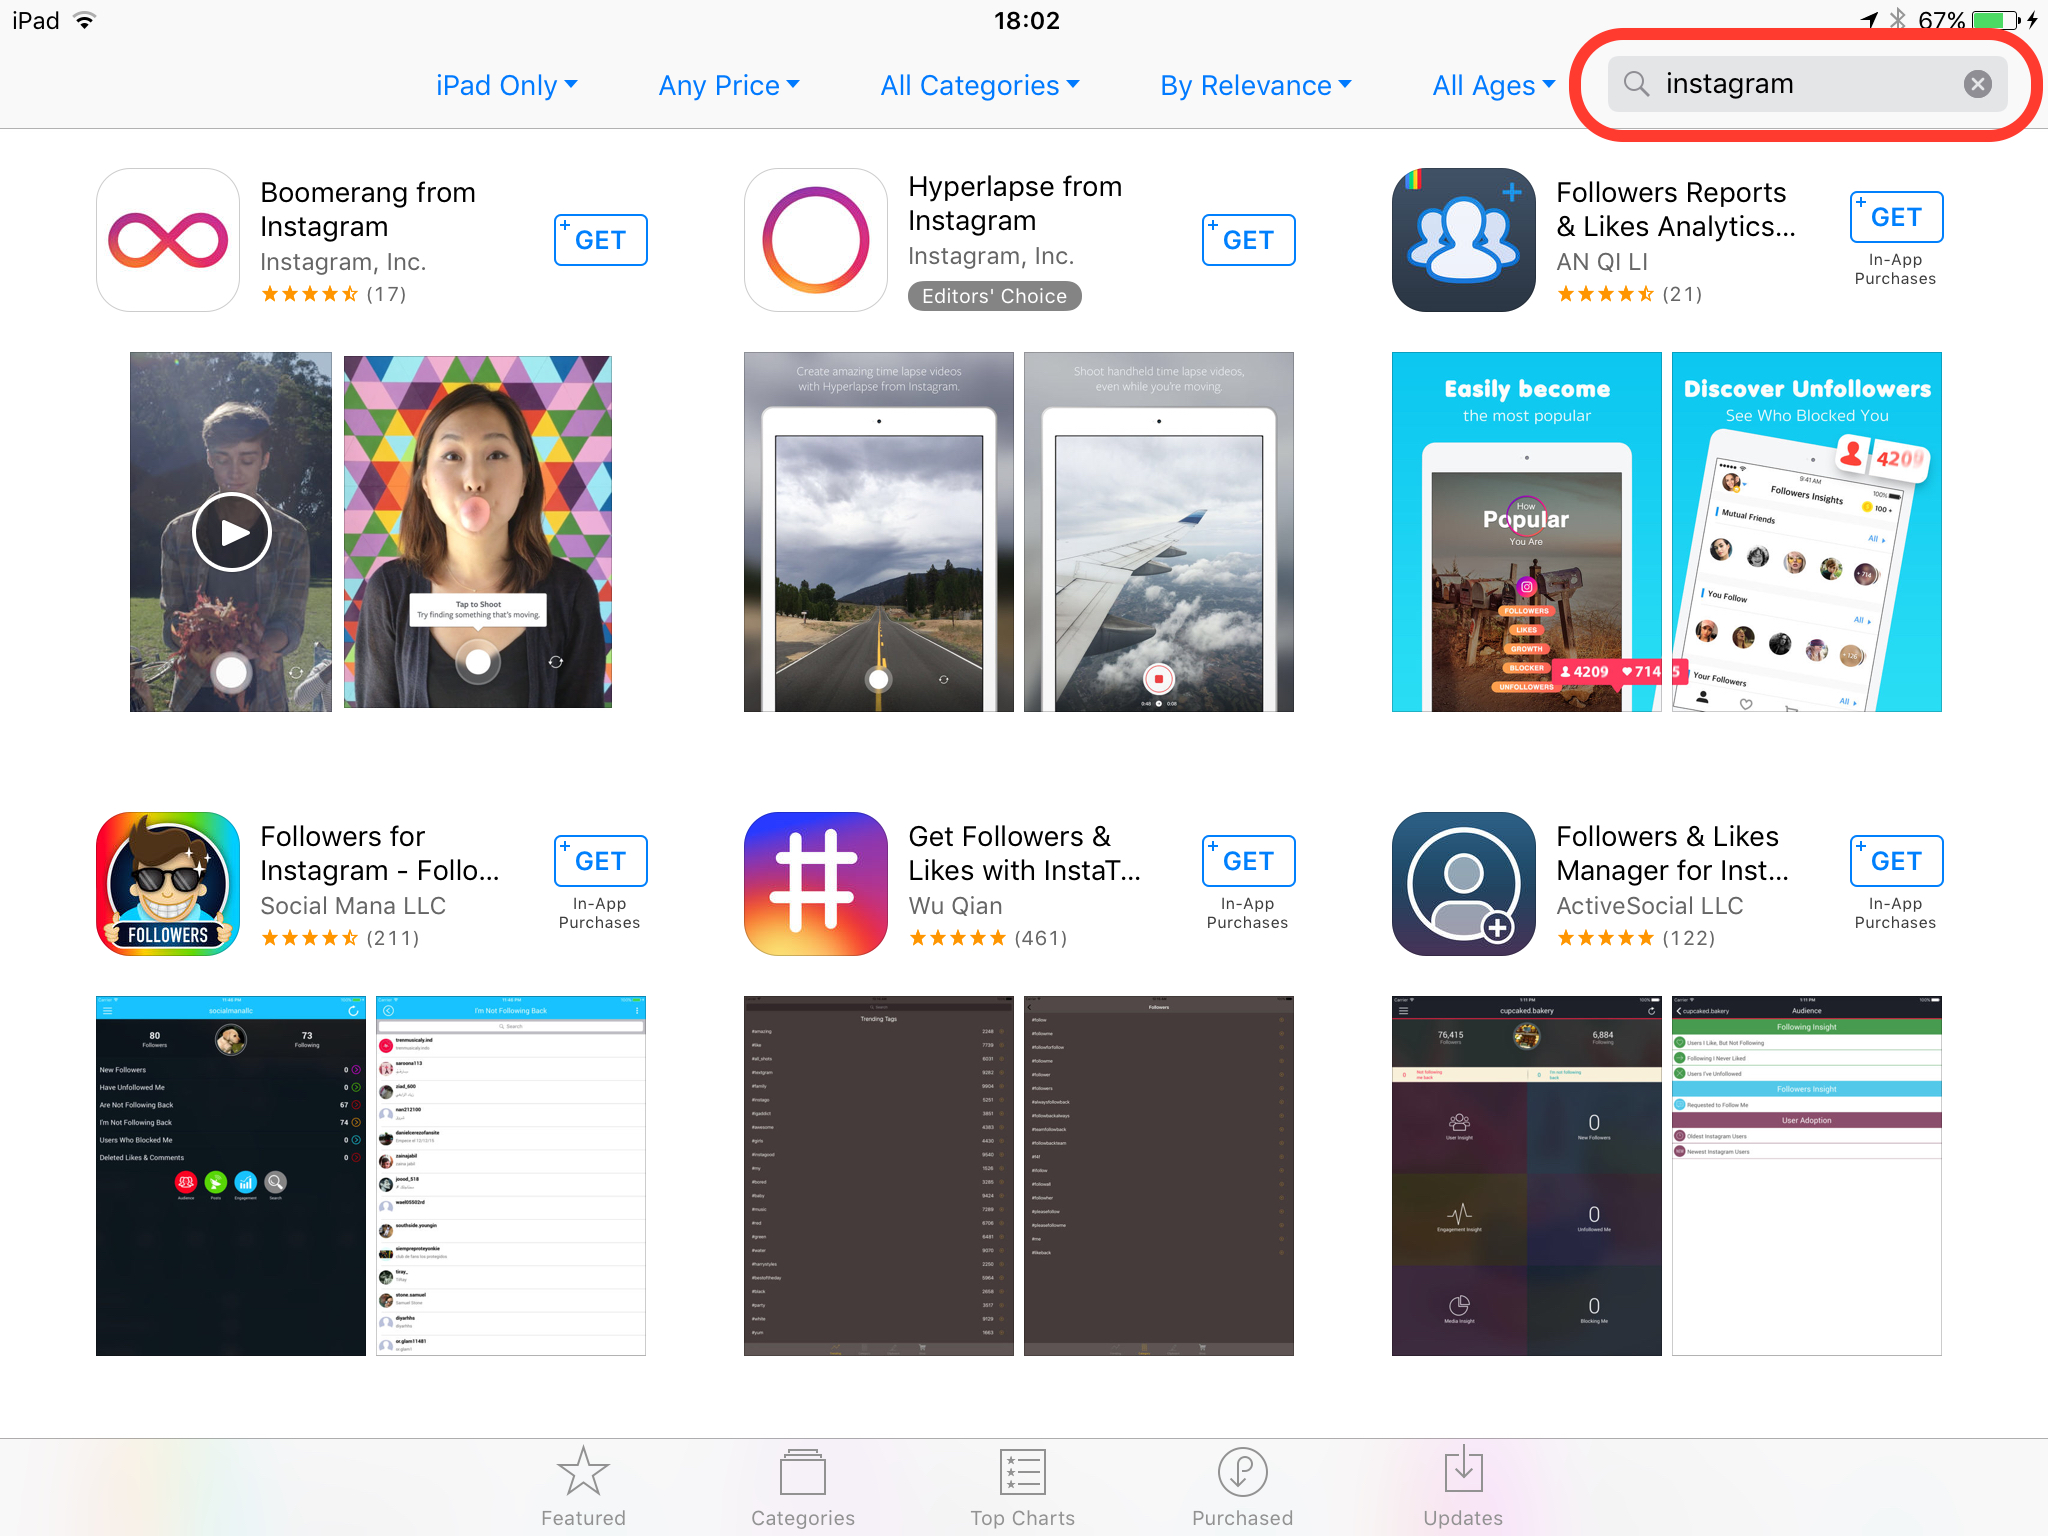 iPad Mini에 Instagram(공식 애플리케이션)을 설치하는 방법, iPad Pro, 아이 패드 에어